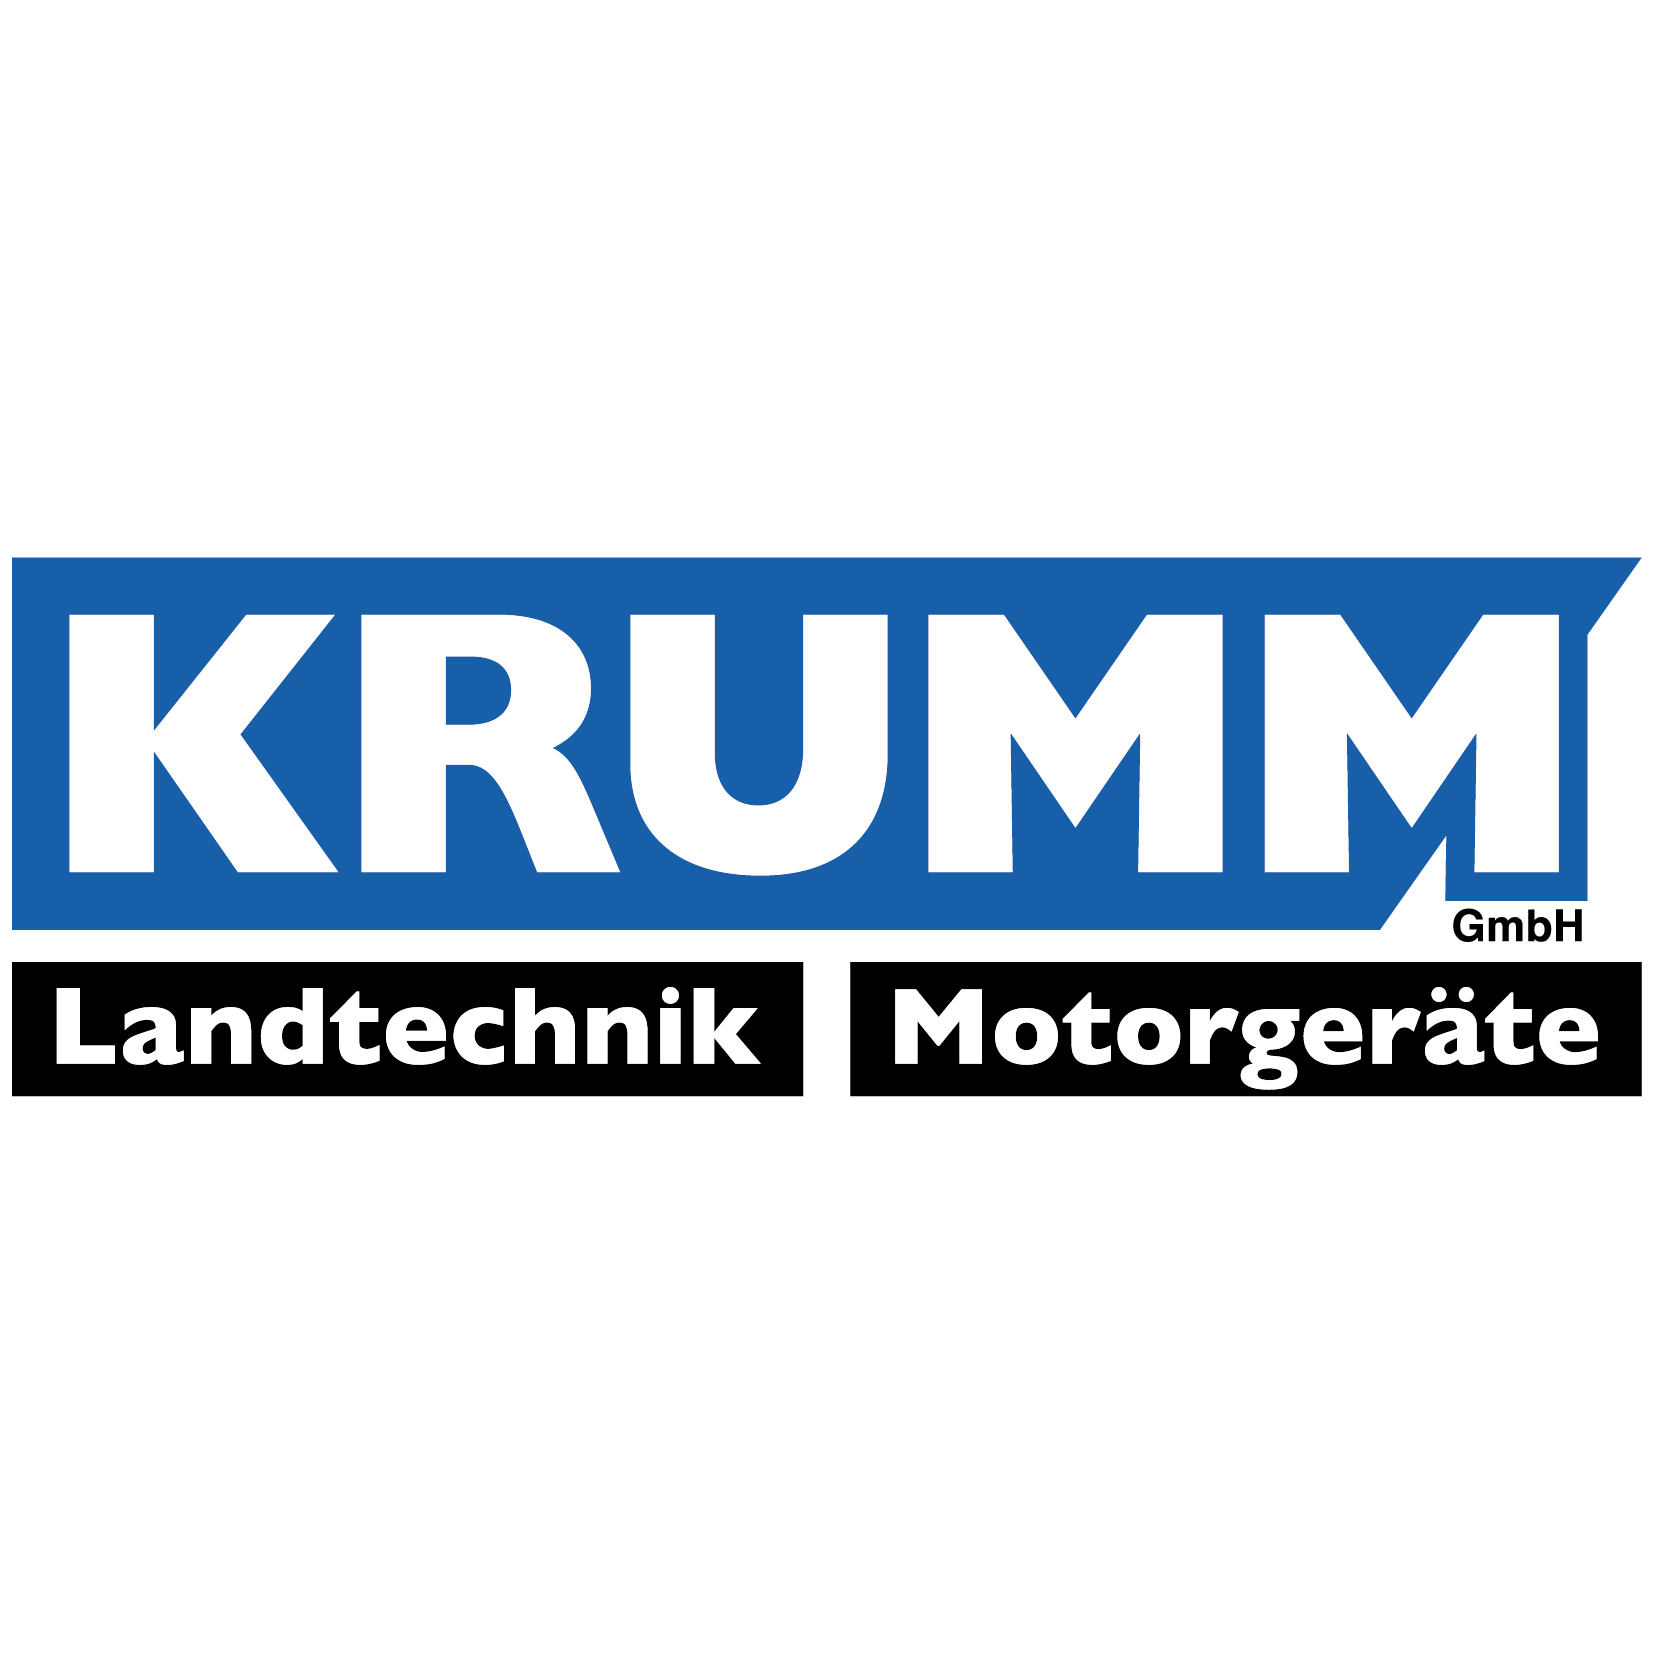 Krumm Landtechnik GmbH  